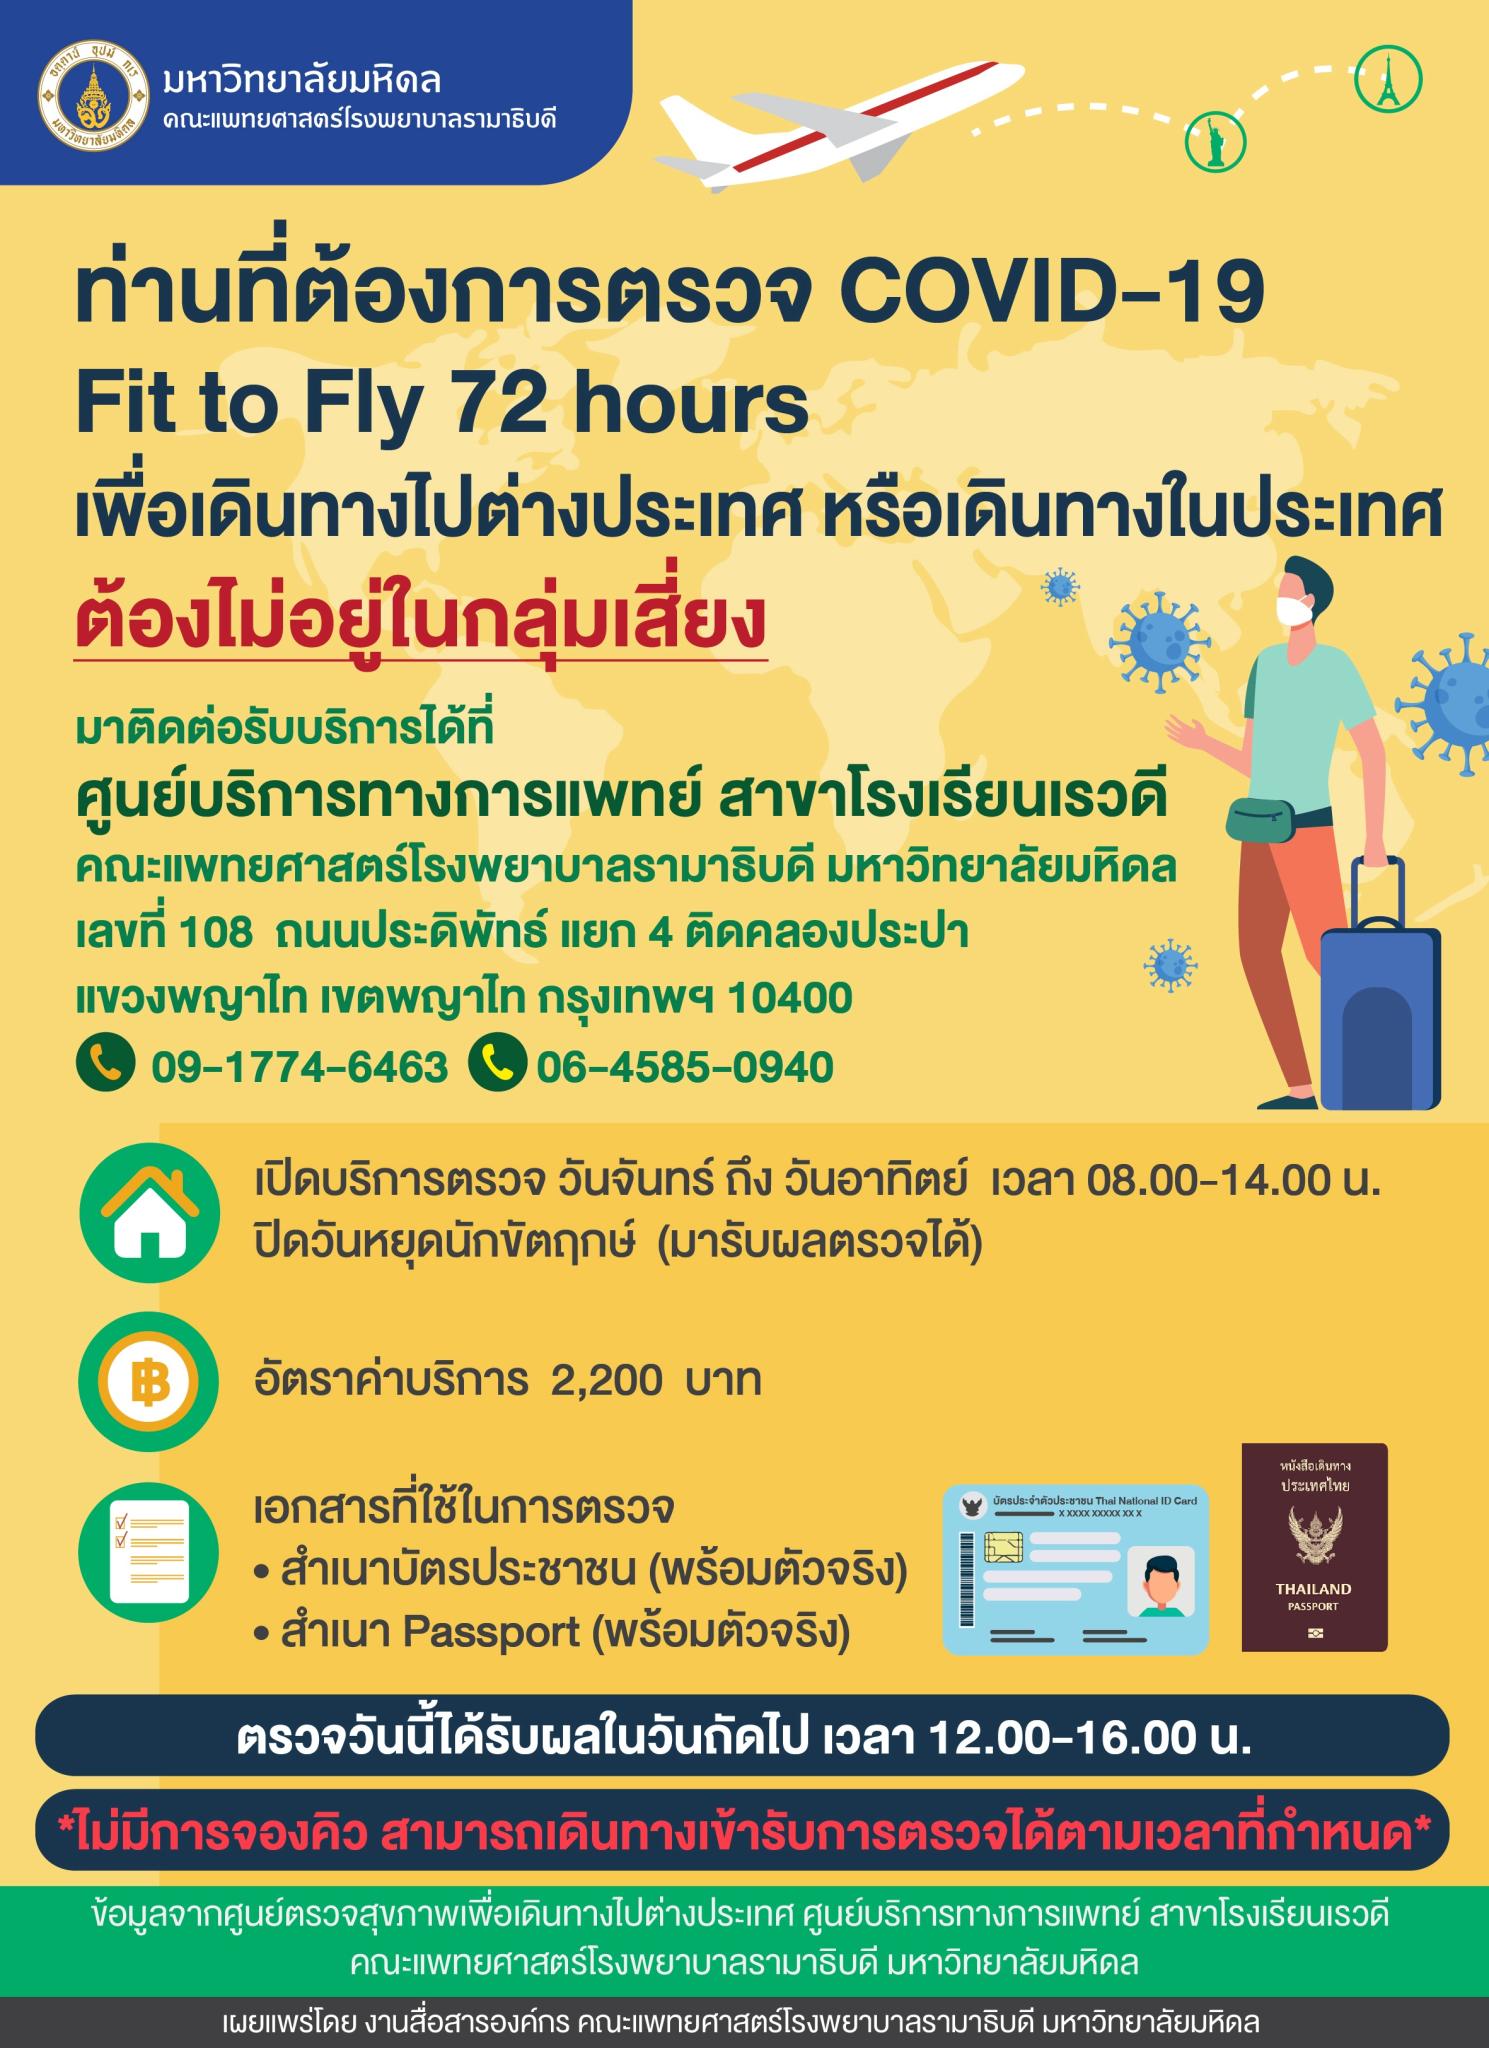 ท่านที่ต้องการตรวจ COVID-19 Fit to Fly 7 hours เพื่อเดินทางไปต่างประเทศ หรือเดินทางในประเทศ ต้องไม่อยู่ในกลุ่มเสี่ยง